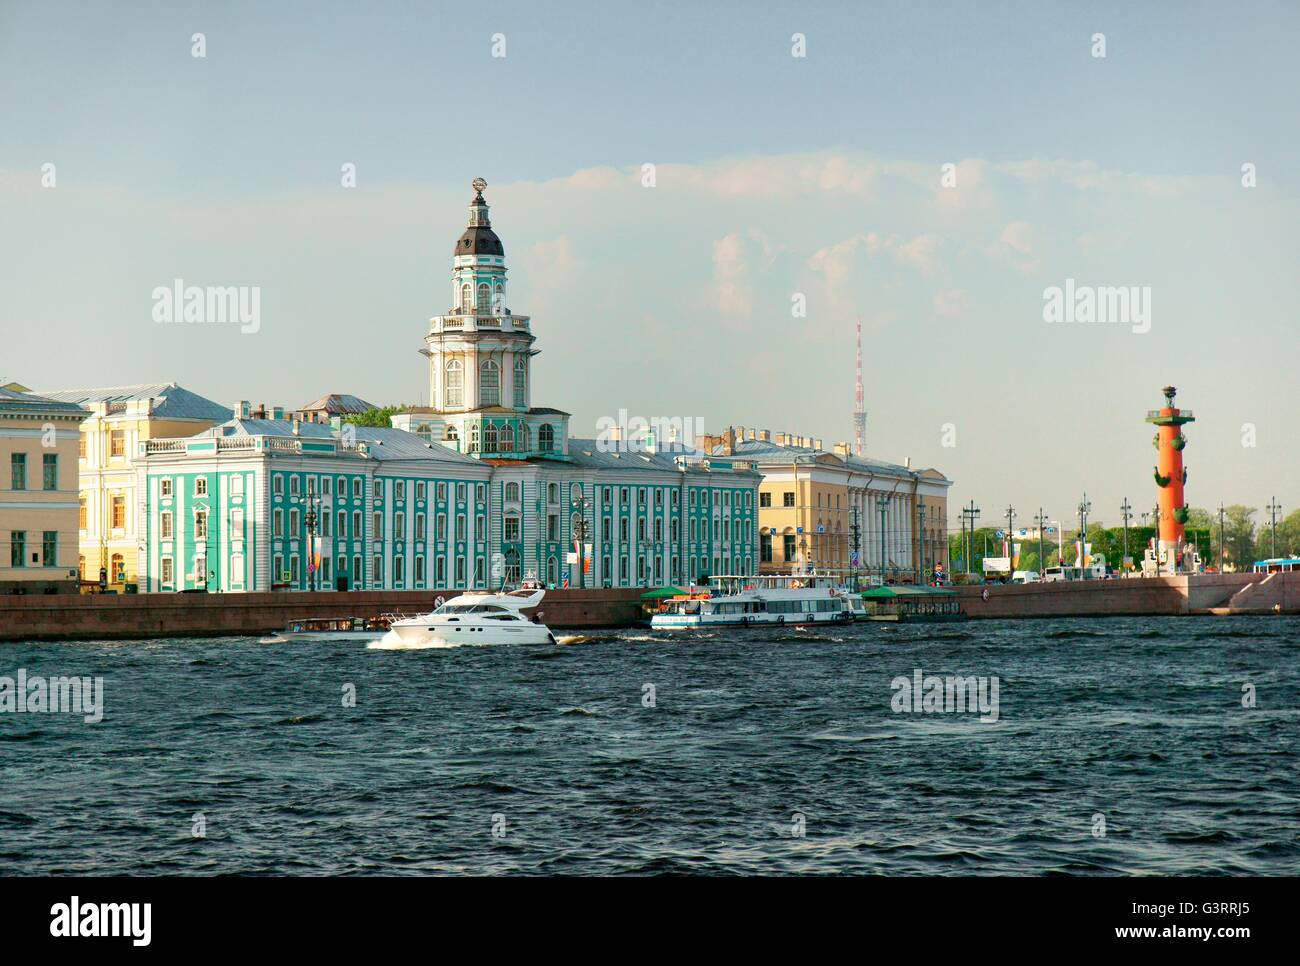 Sankt Petersburg Russland. Die blaue kunstkammer Gebäude, zoologogical Museum und rostrale Spalte. vasilevskiy Insel an der Newa. Stockfoto